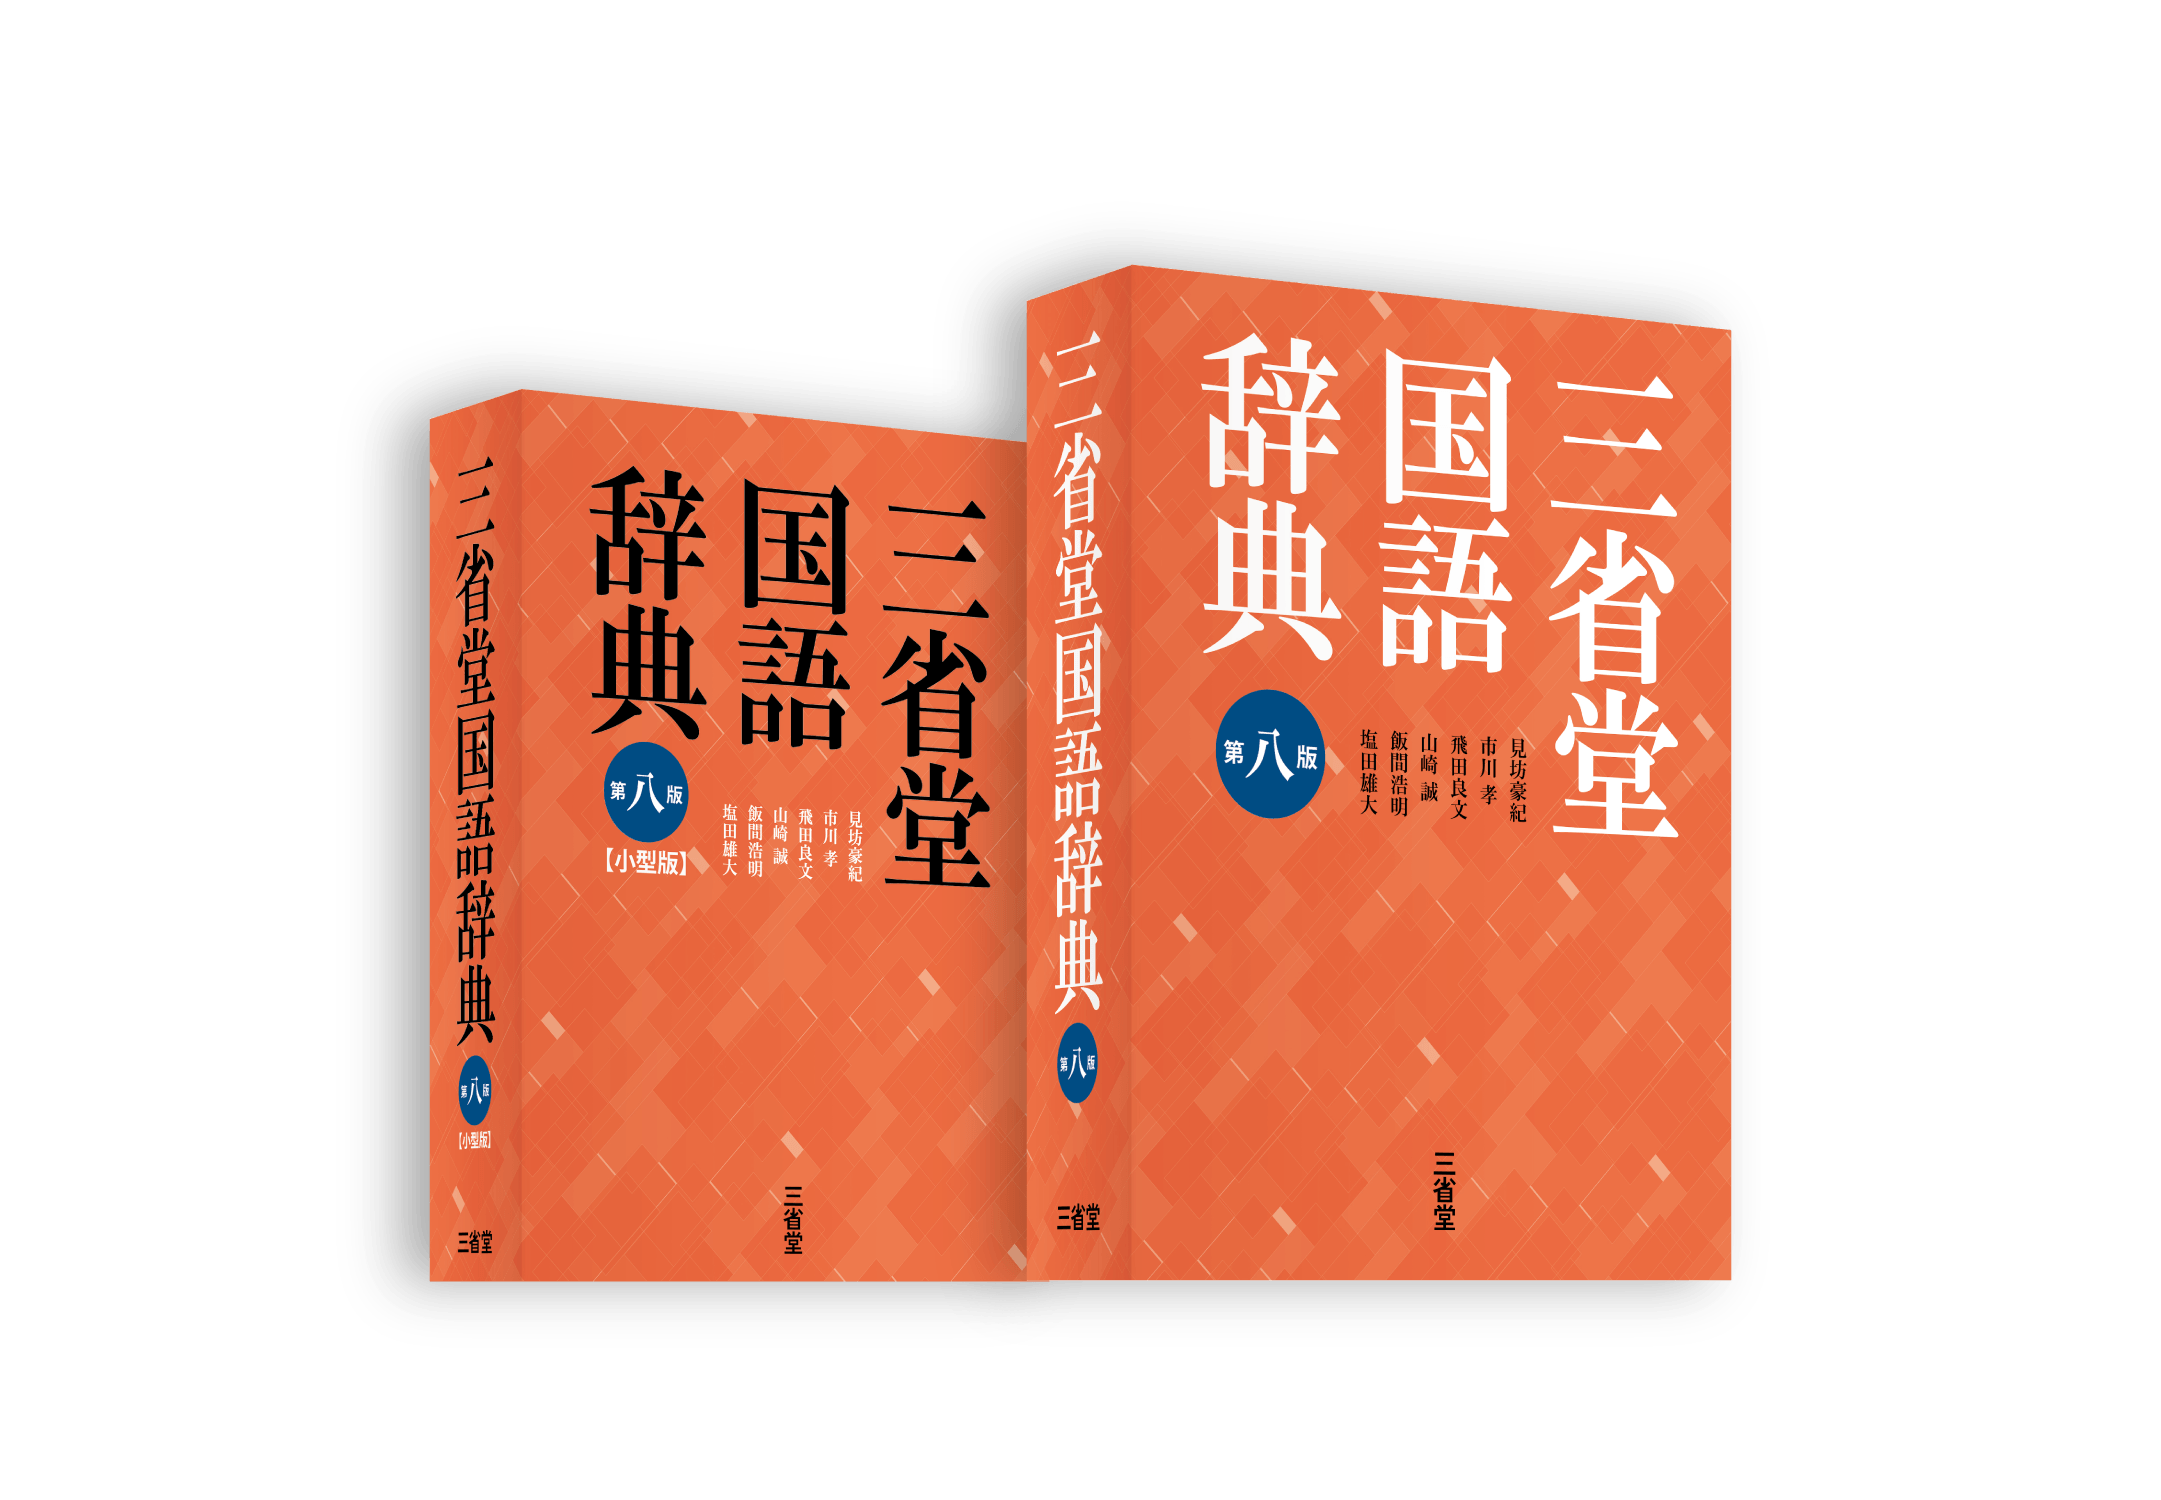 8三国】『三省堂国語辞典 第八版』の特設サイトを公開しました 